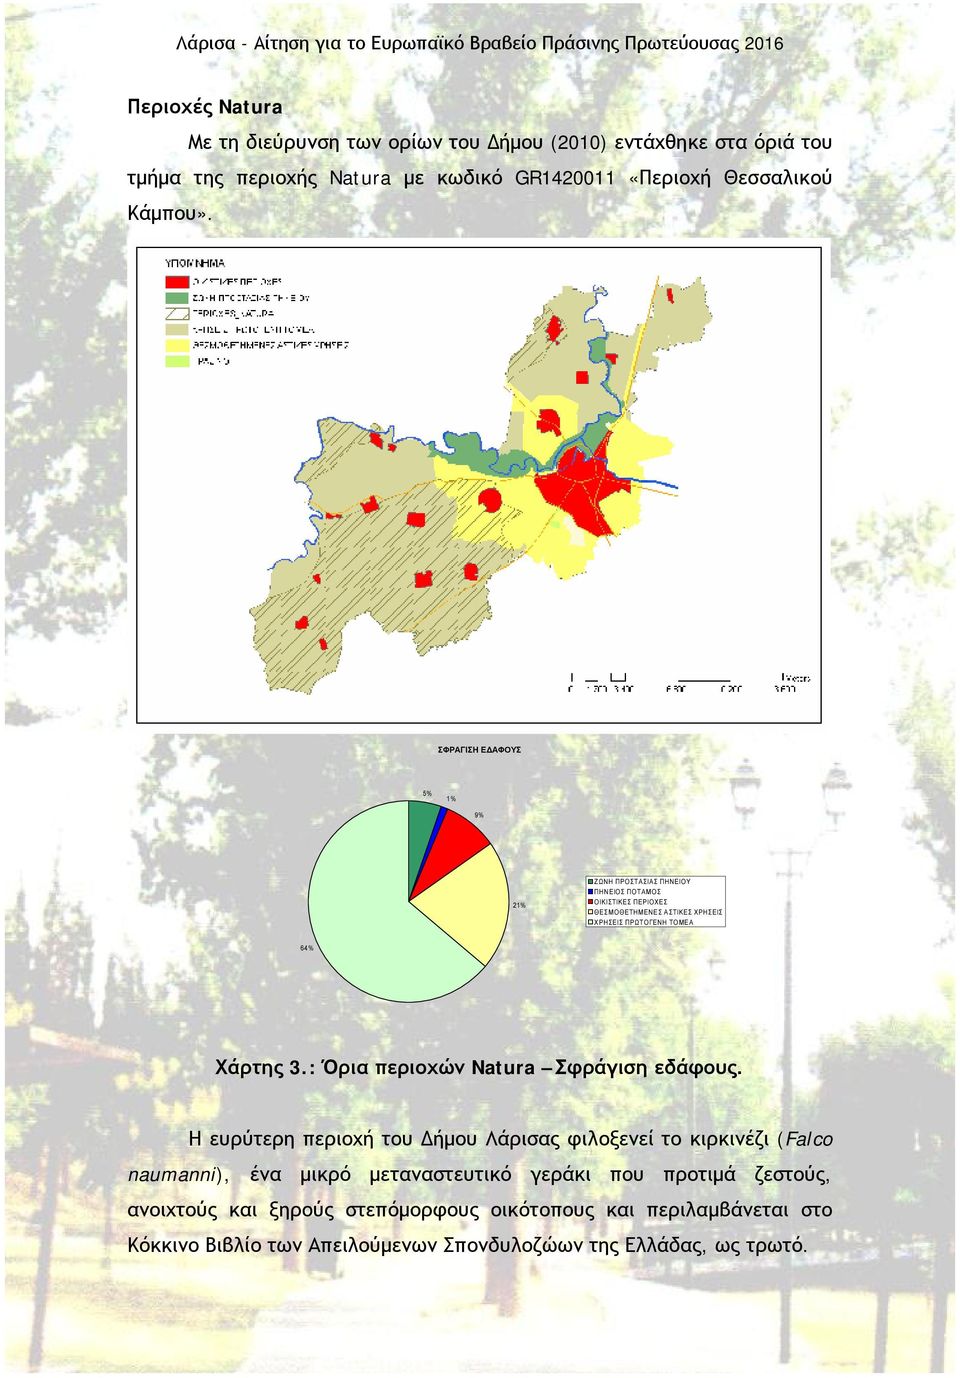 3.: Όρια περιοχών Natura Σφράγιση εδάφους.